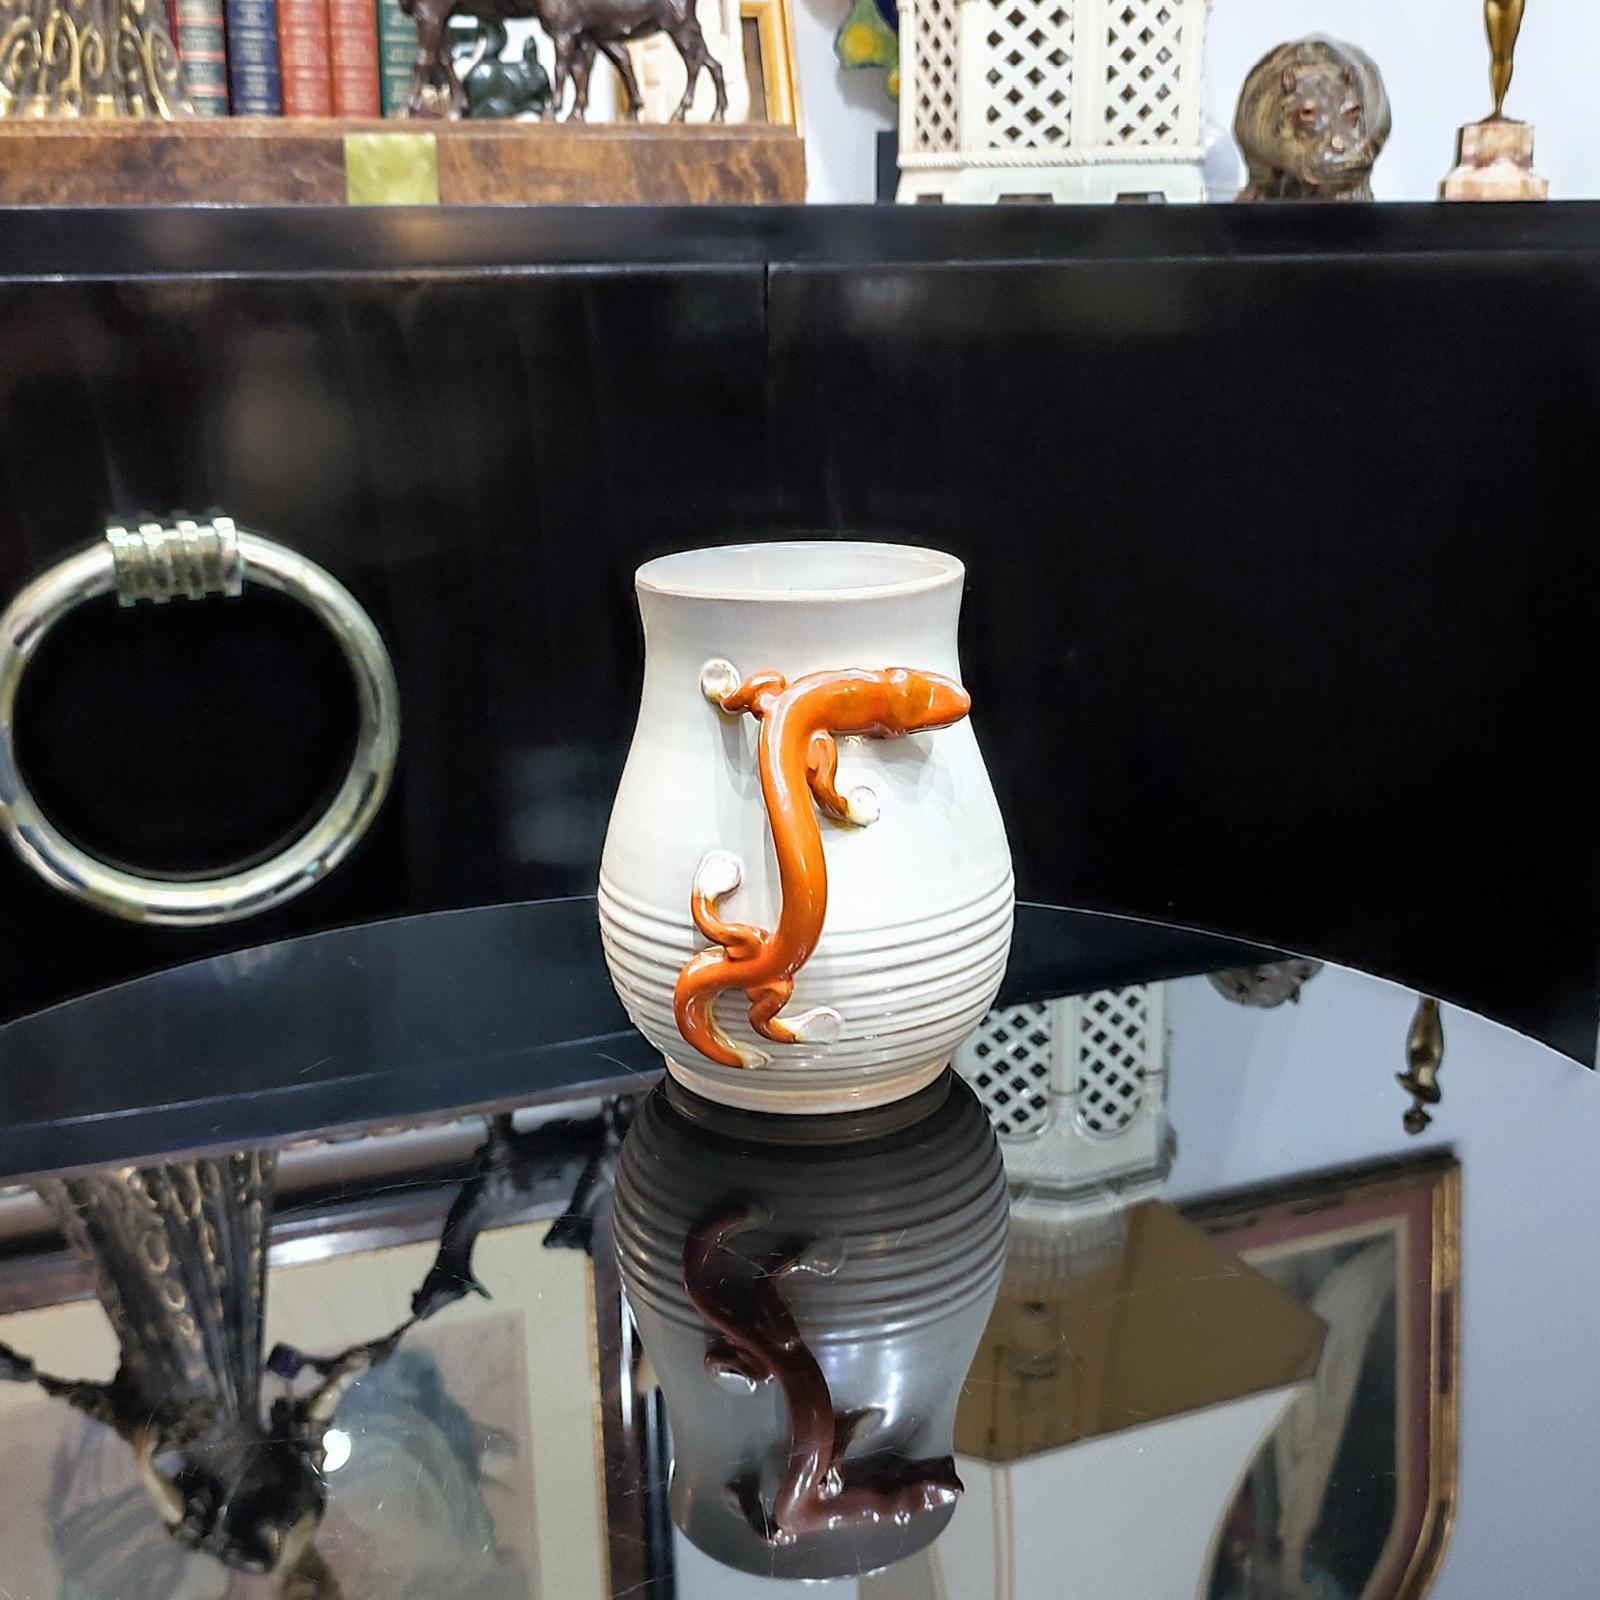 Vase en faïence Salamandre, conçu par Eva Jancke-Björk, BO Fajans Gefle, Suède, années 1920.
Le vase en faïence a été décoré d'un lézard rouge orangé sur fond beige, qui peut servir d'anse. 
Hauteur 18 cm.
Il est en bon état général, avec de petits